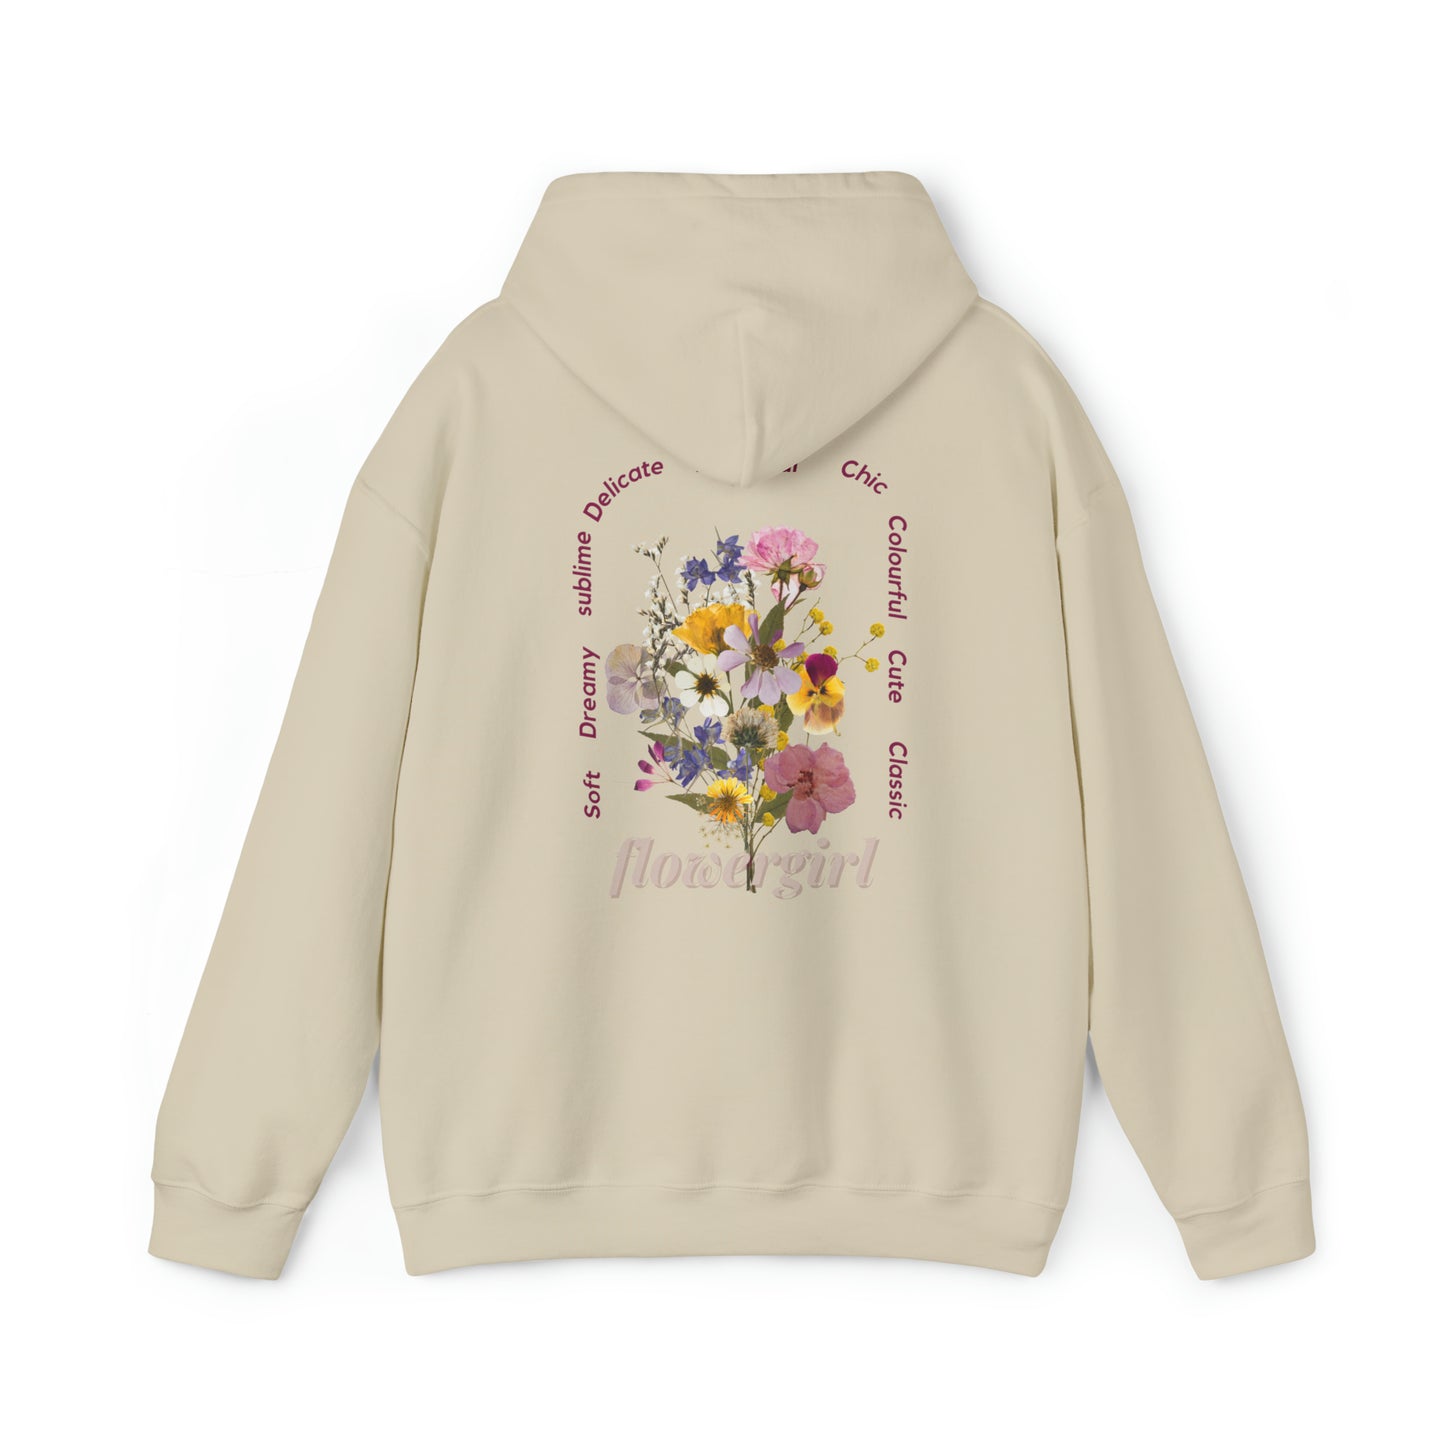 Flower girl hoodie